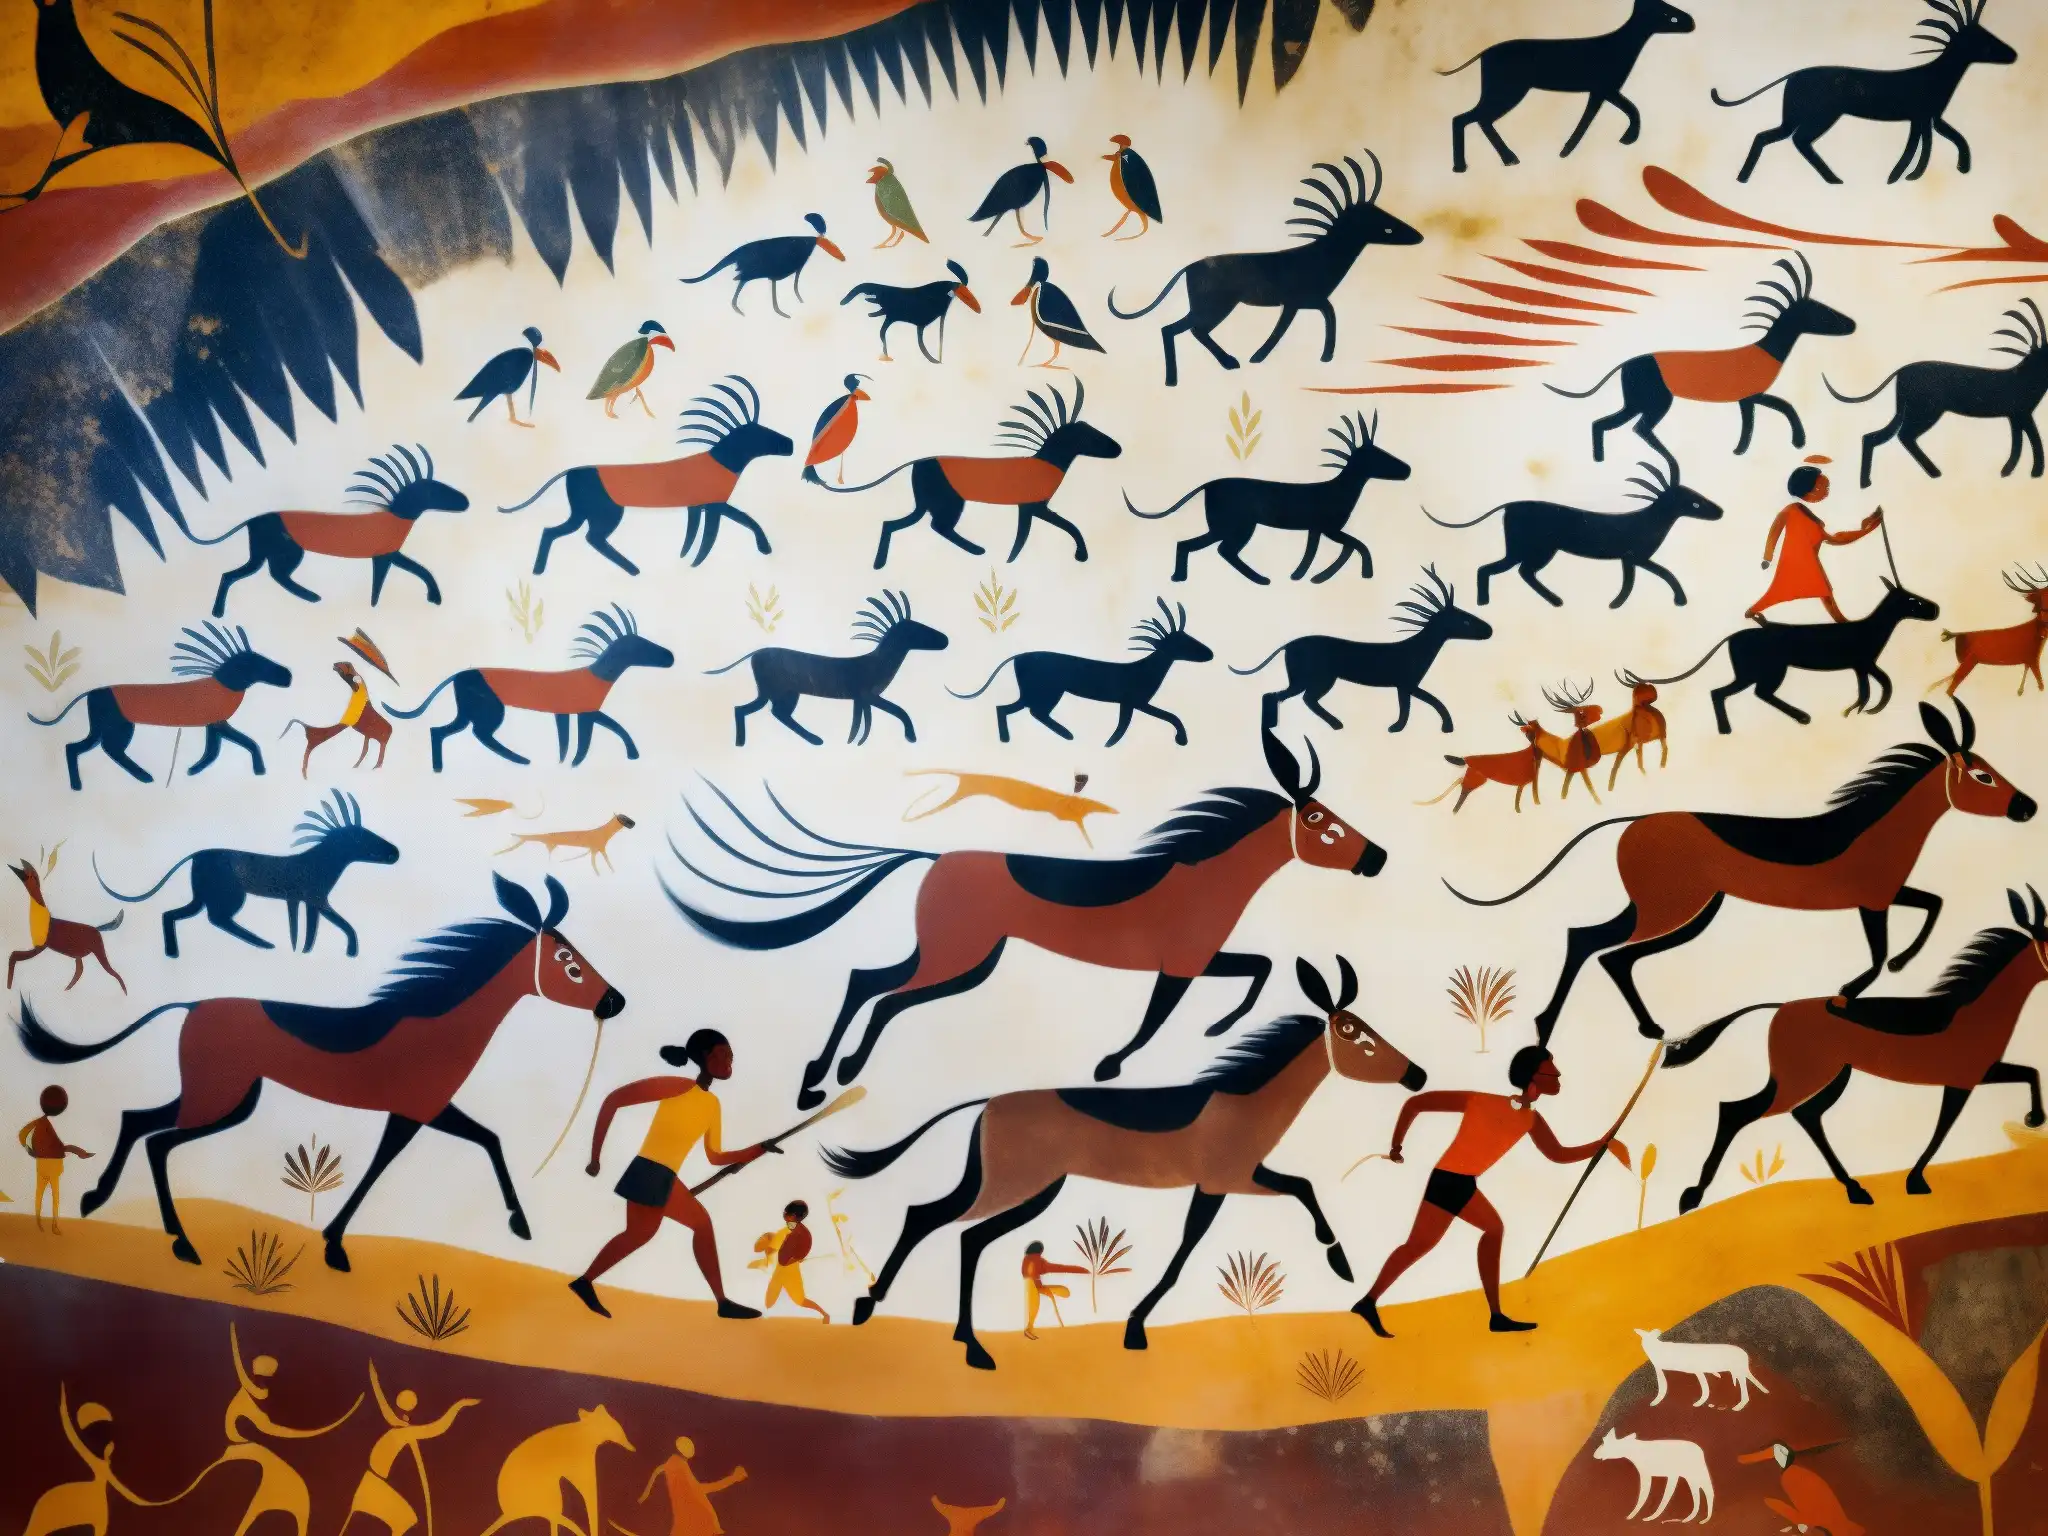 Pinturas rupestres en la Cueva de la Pileta: Detalle de una escena de caza con figuras humanas y animales, colores vibrantes y líneas finas